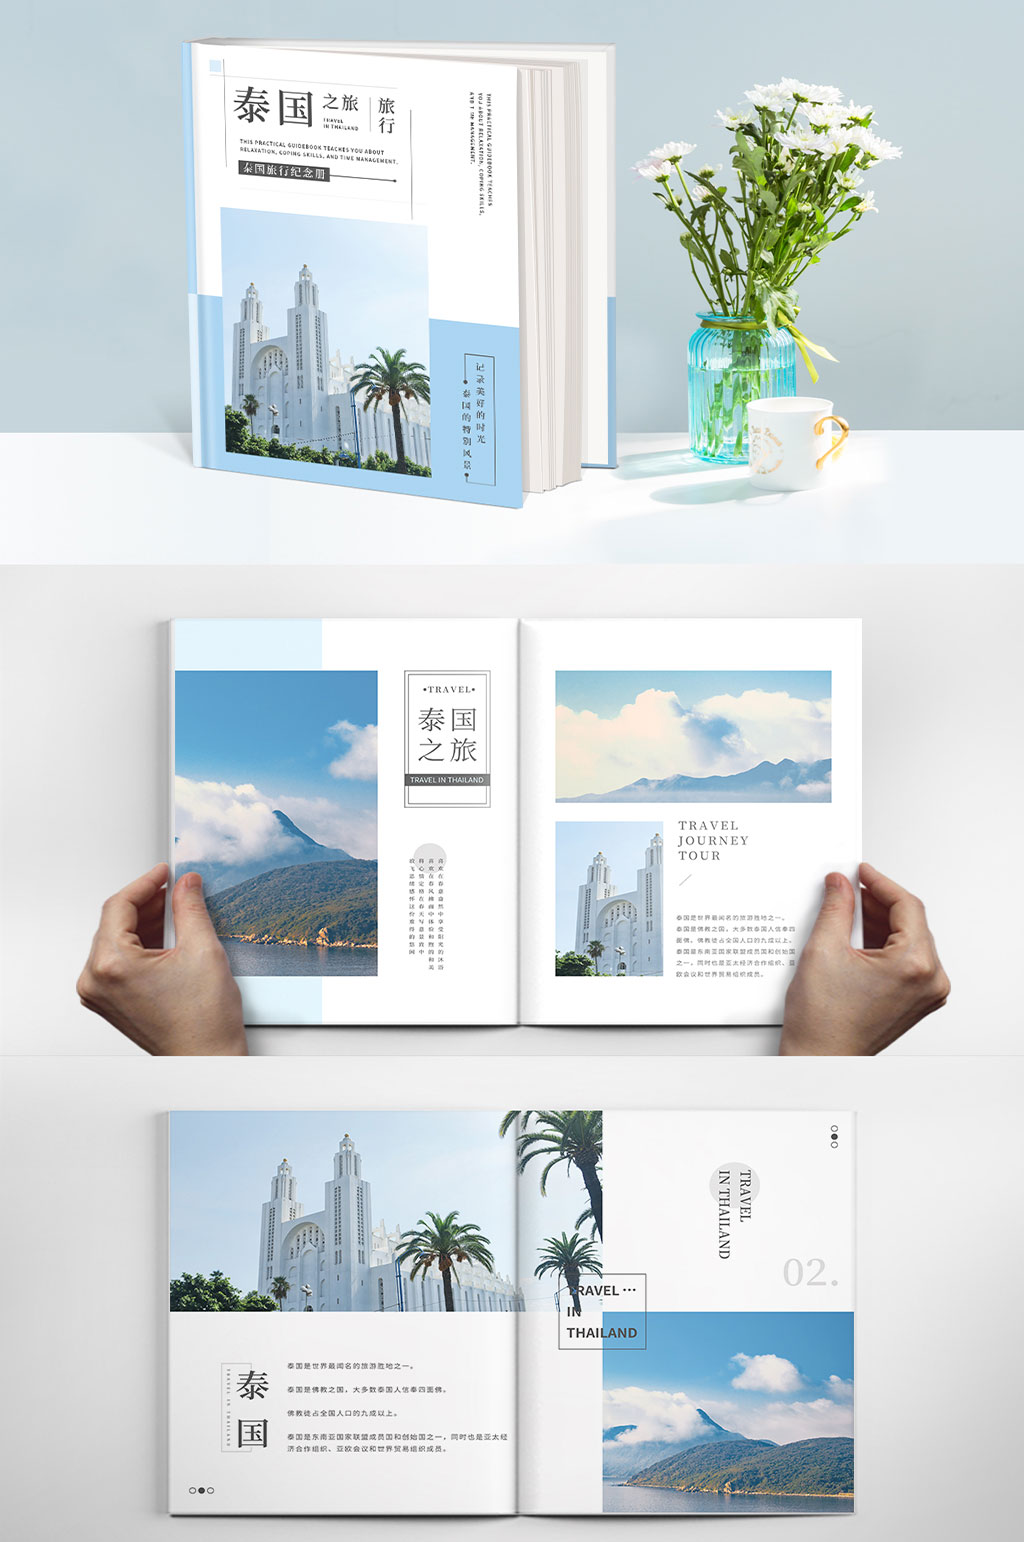 泰国之旅泰国旅行相册旅行纪念册相册同学录画册场景:全部画册设计1个